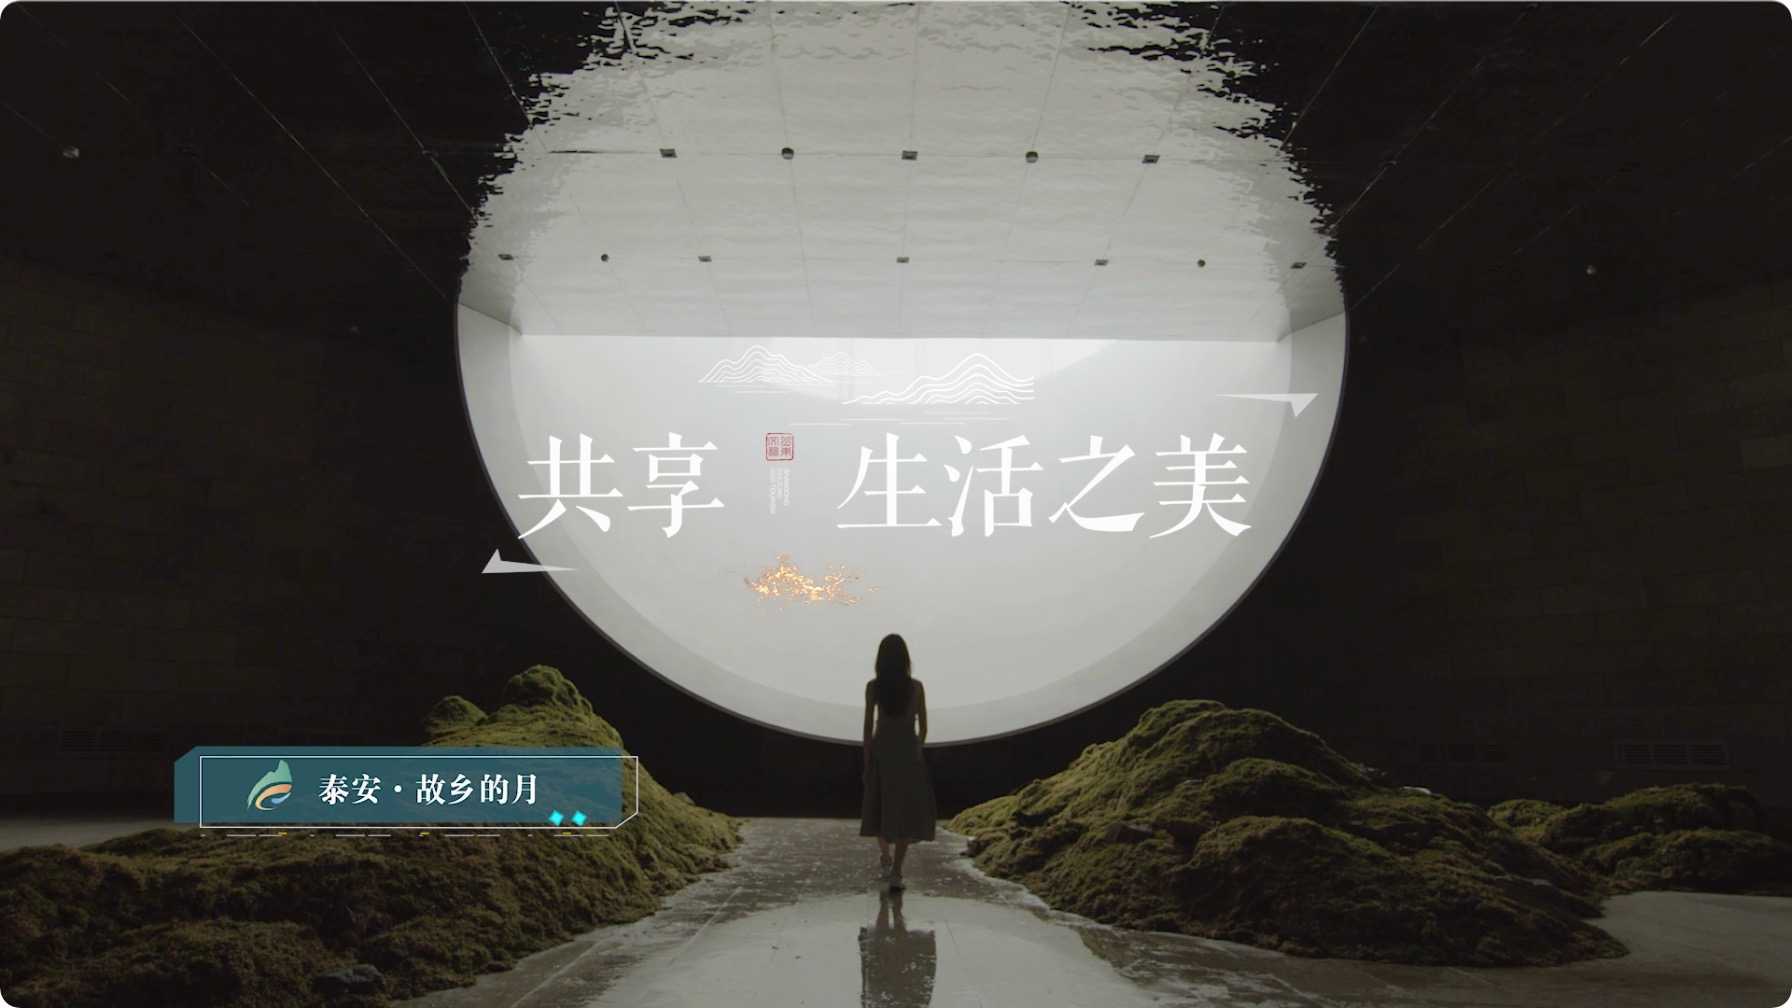 《让生活更美好》山东文旅集团—业务宣传片